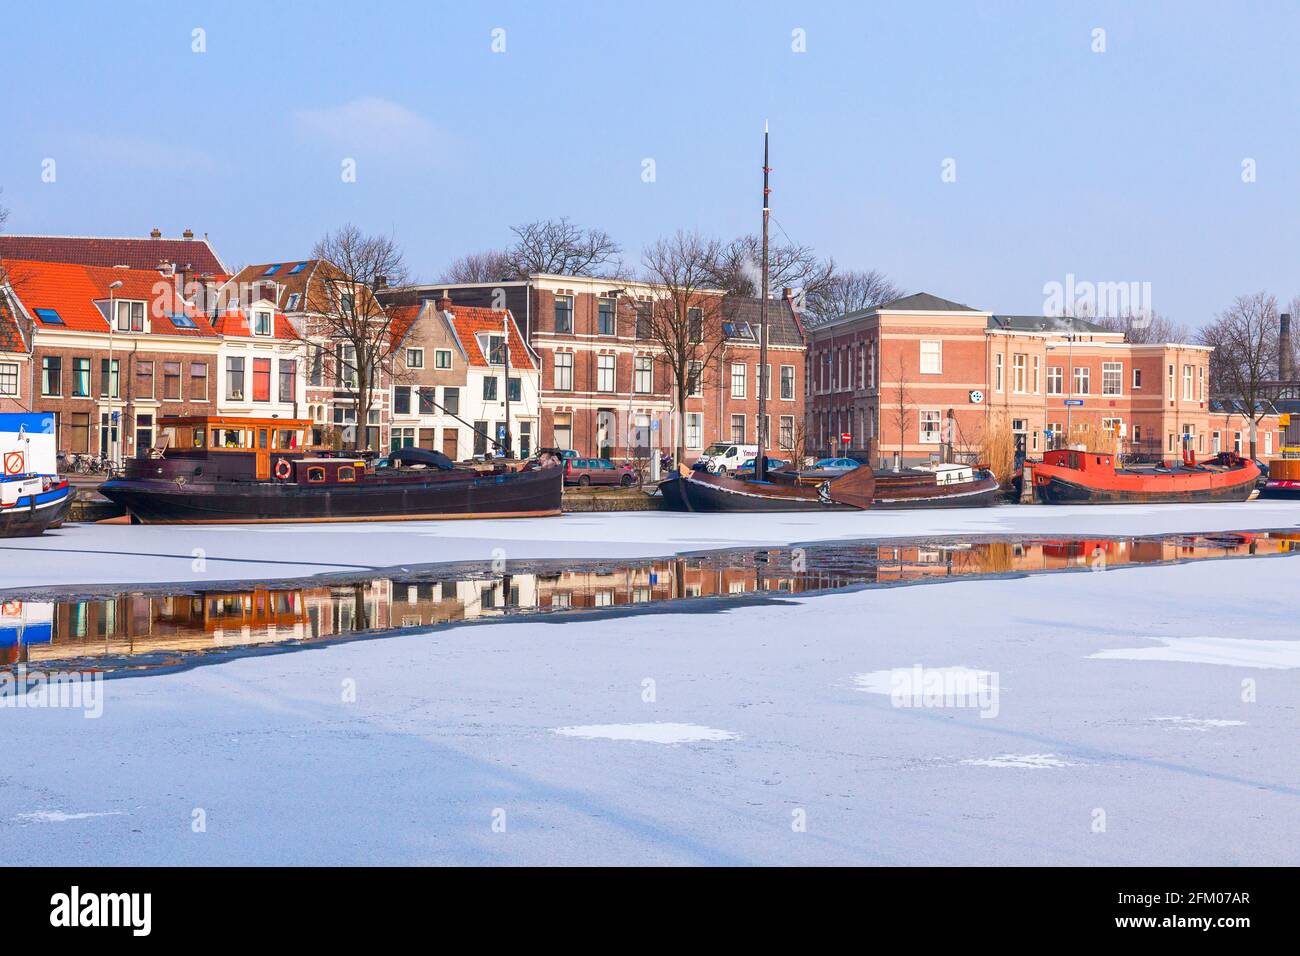 Maisons et bateaux traditionnels amarrés dans le canal gelé de la rivière Spaarne, Haarlem, Amsterdam, Hollande-Nord, pays-Bas Banque D'Images